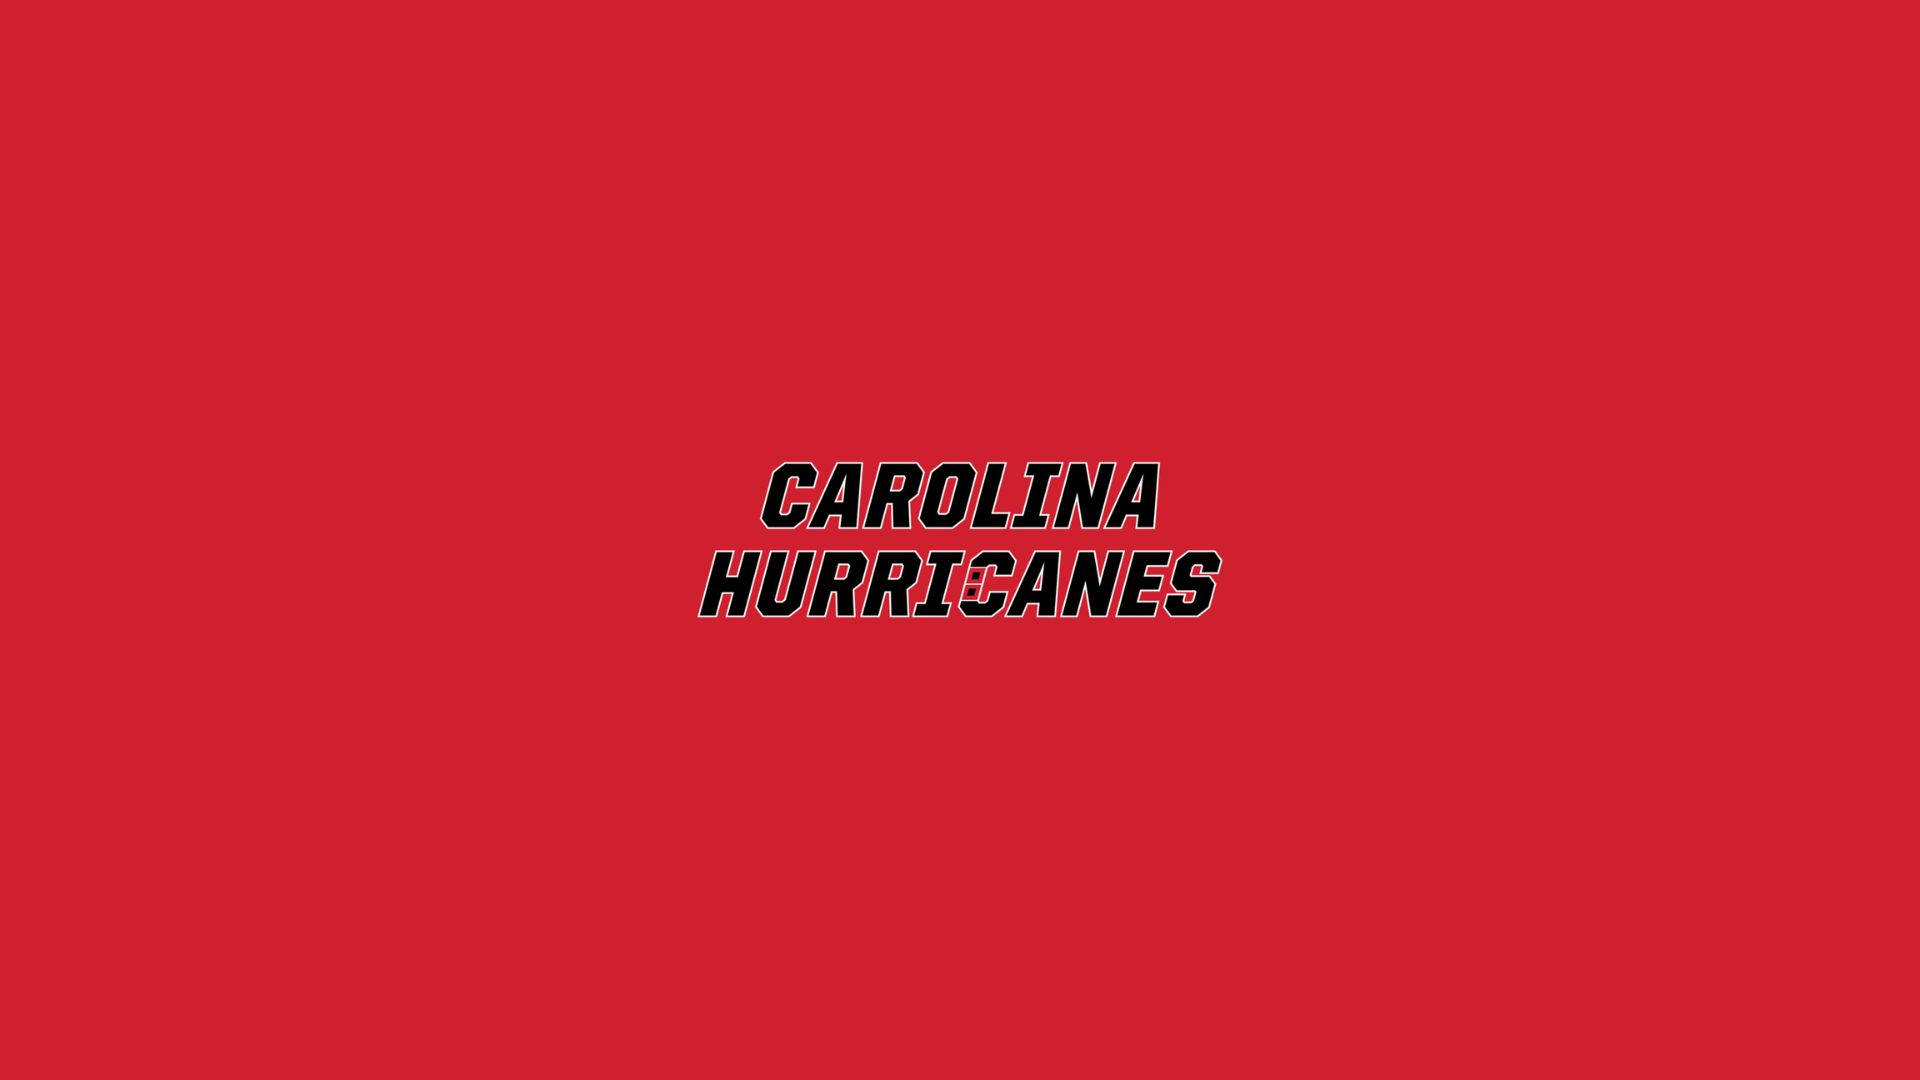 Carolina Hurricanes On Red Background Background